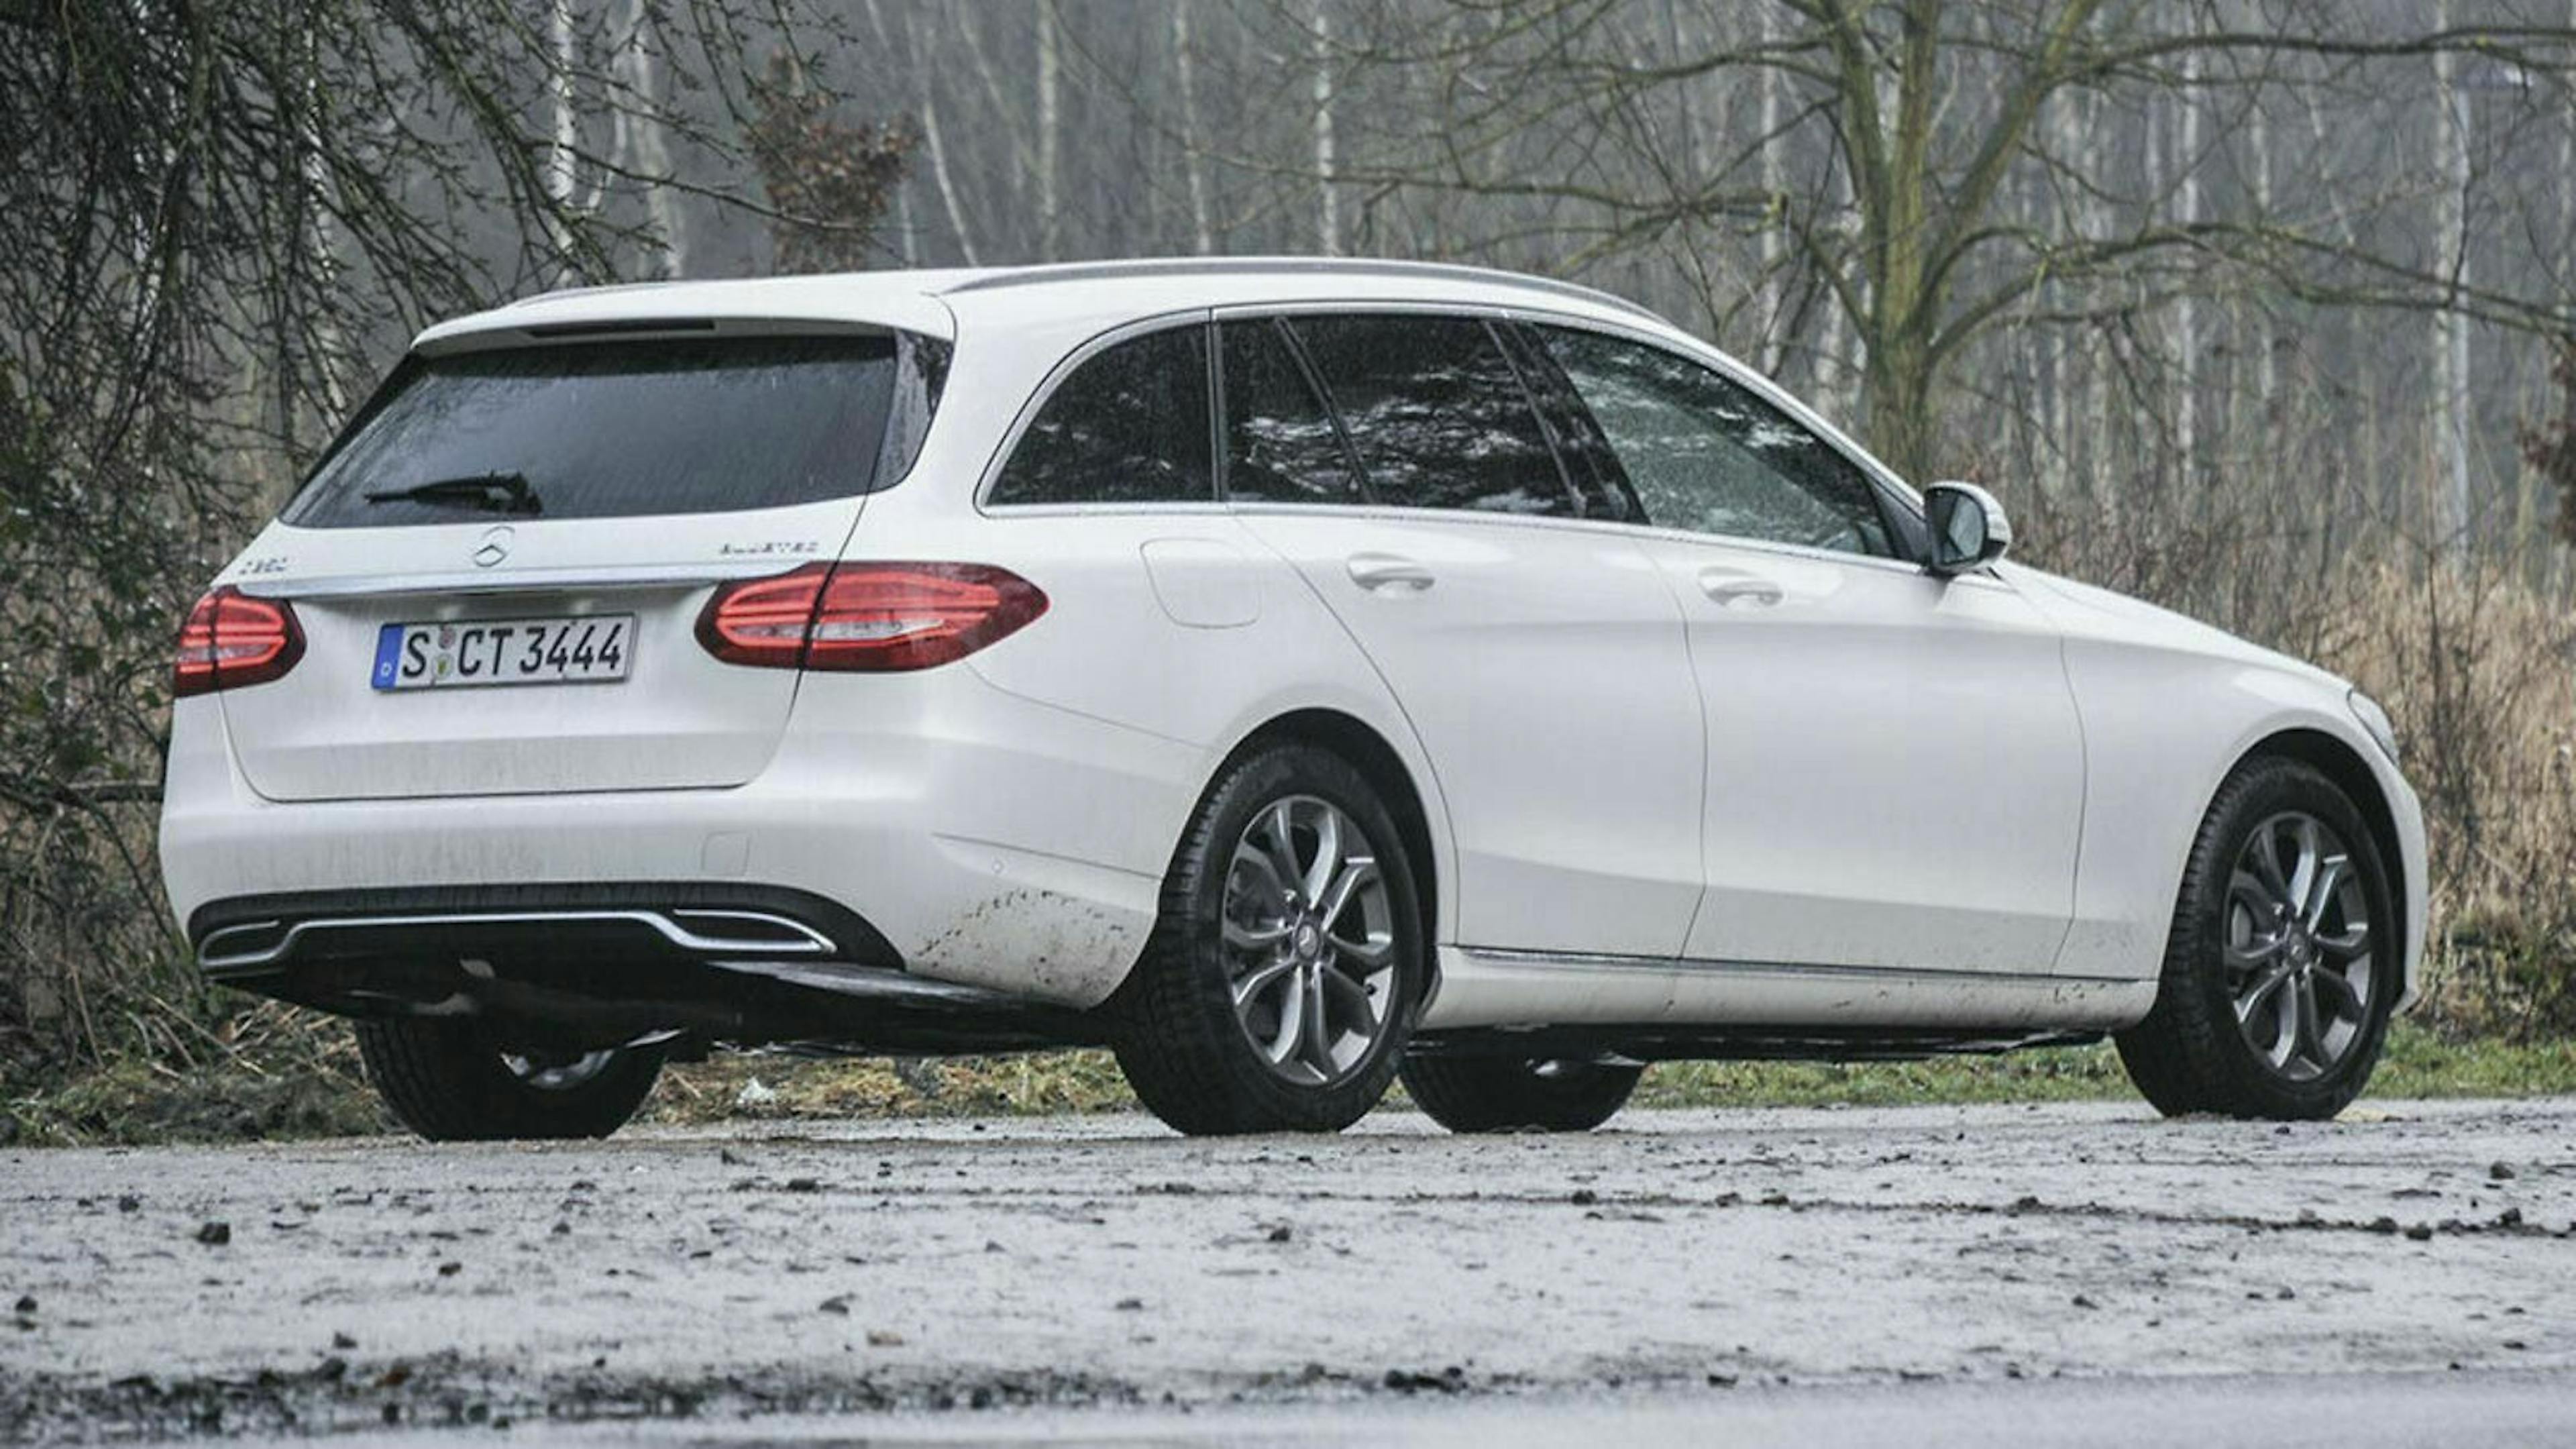 Der Mercedes C250 d kommt auf stattliche Maße. 4.702 mm in der Länge, 1.810 mm in der Breite und 1.457 mm in der Höhe